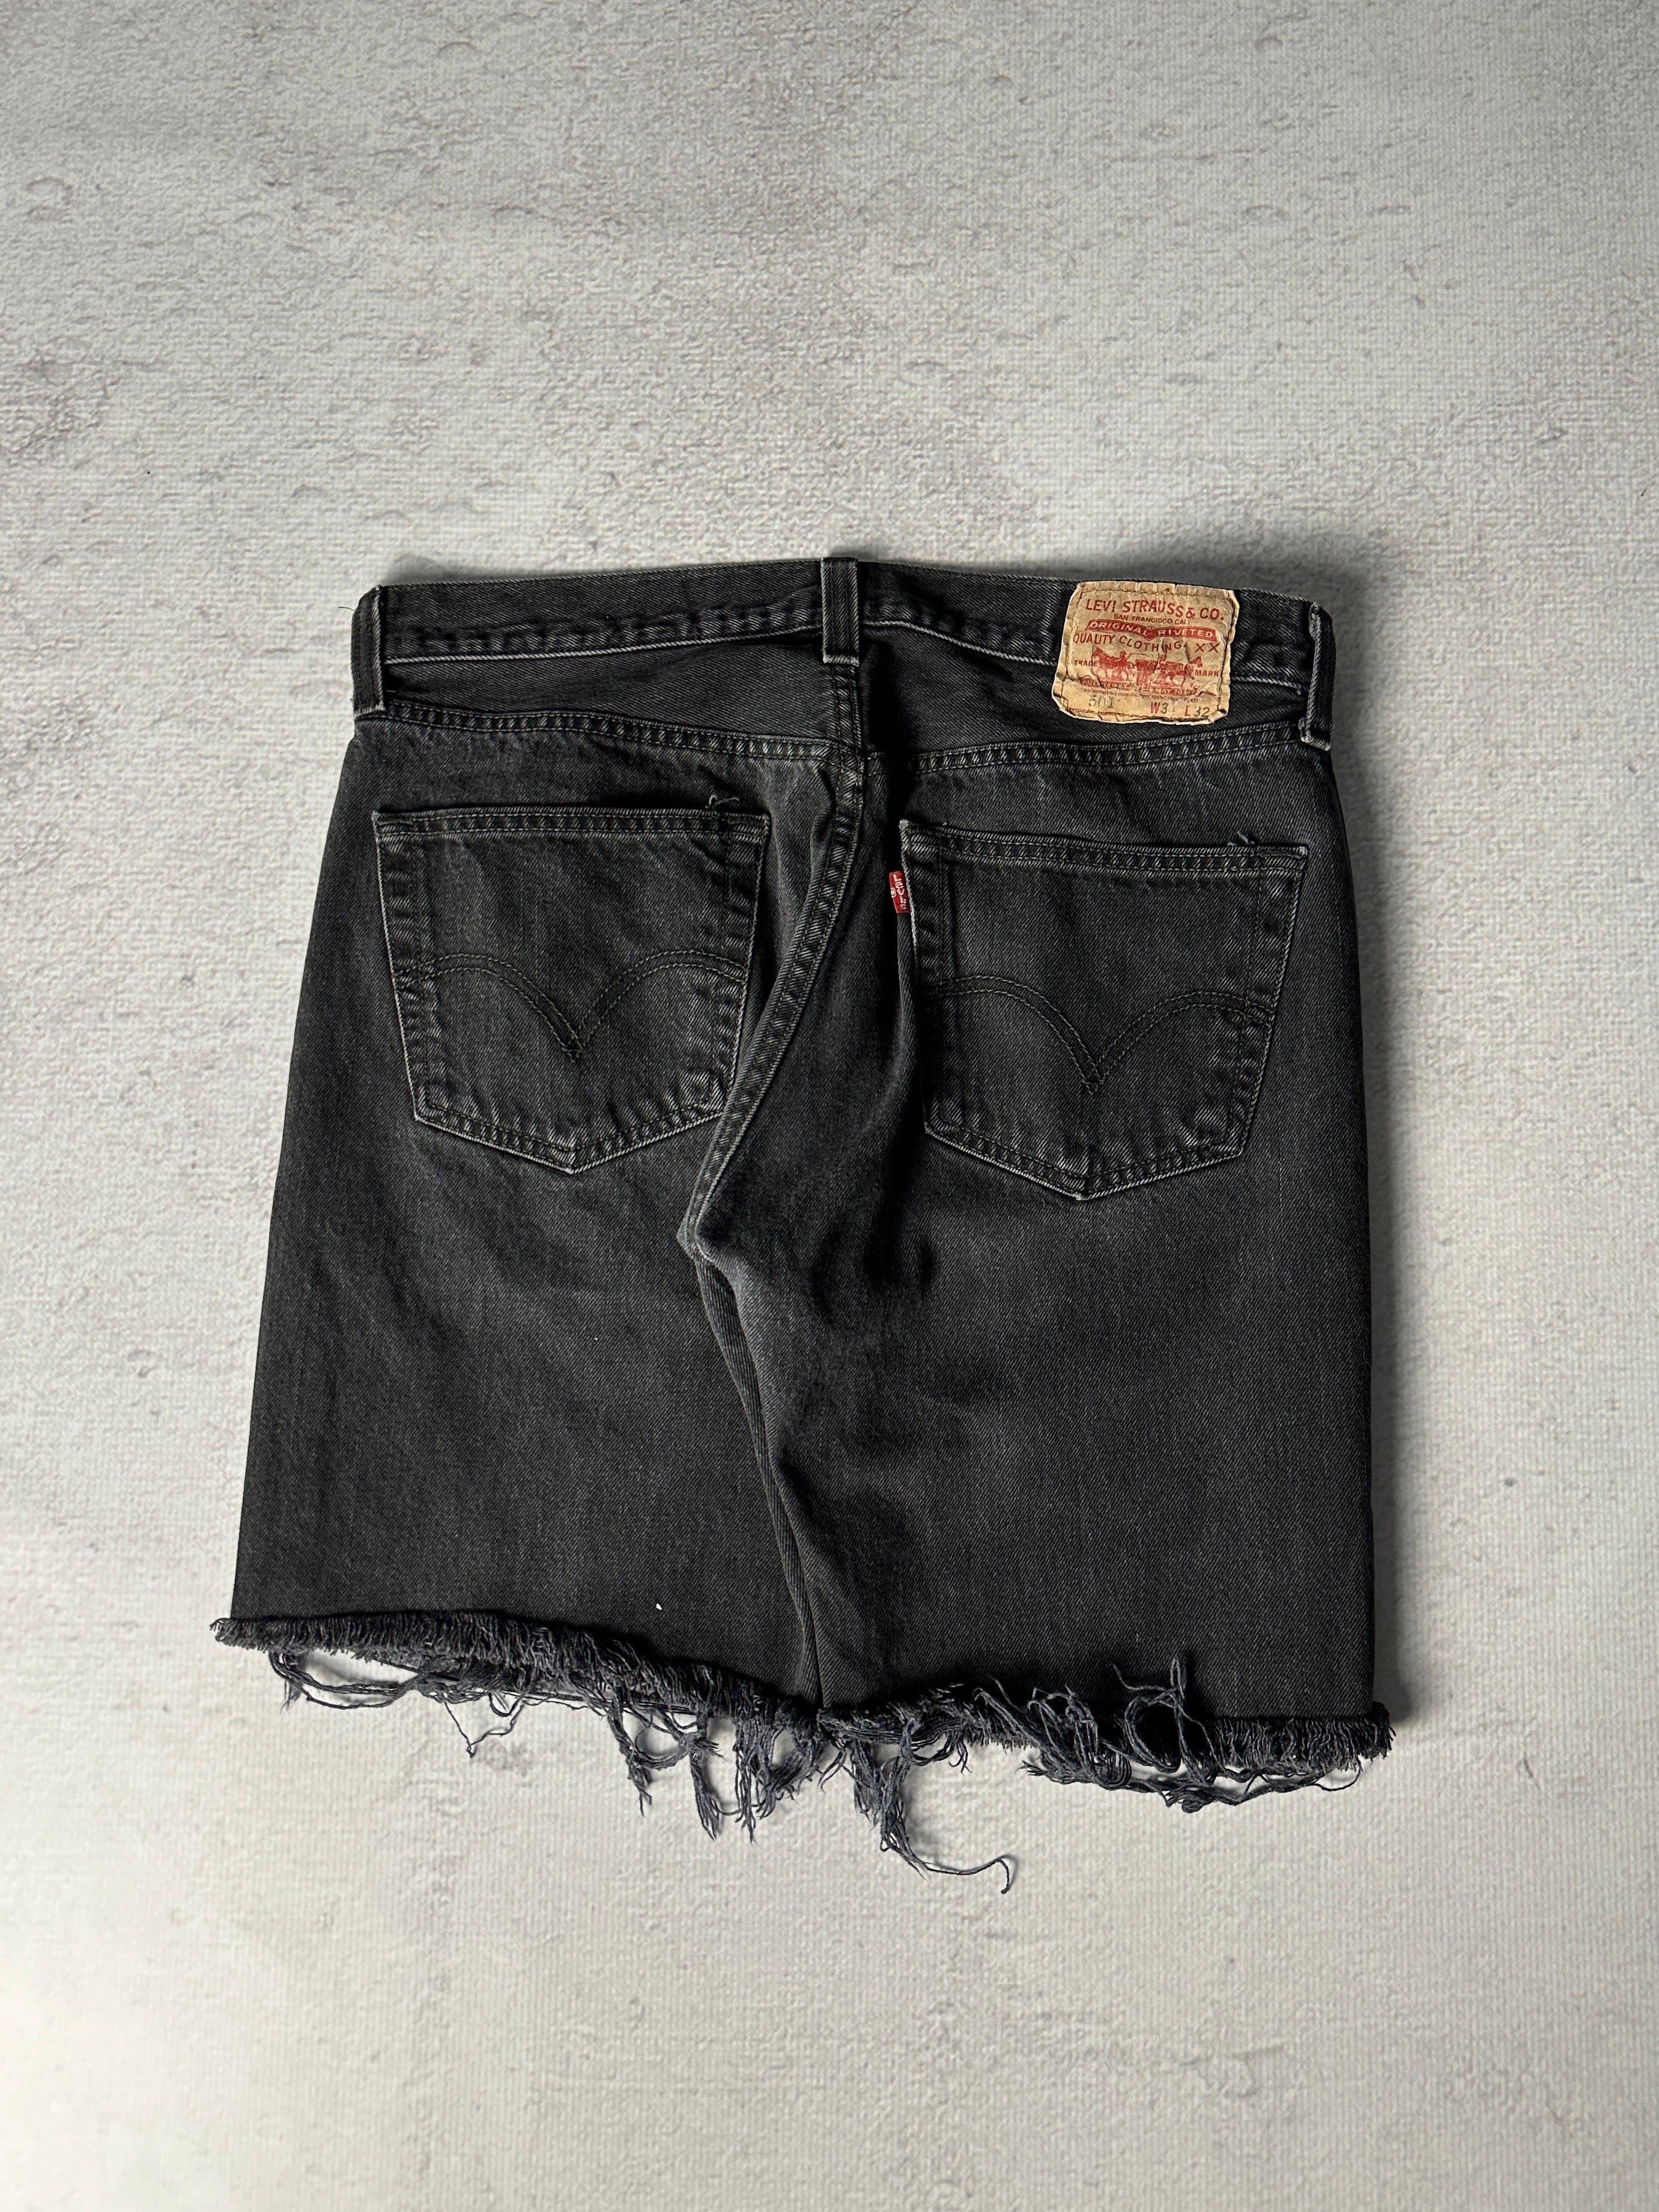 Vintage Levis 501 Jean Shorts - Men's 34W9L